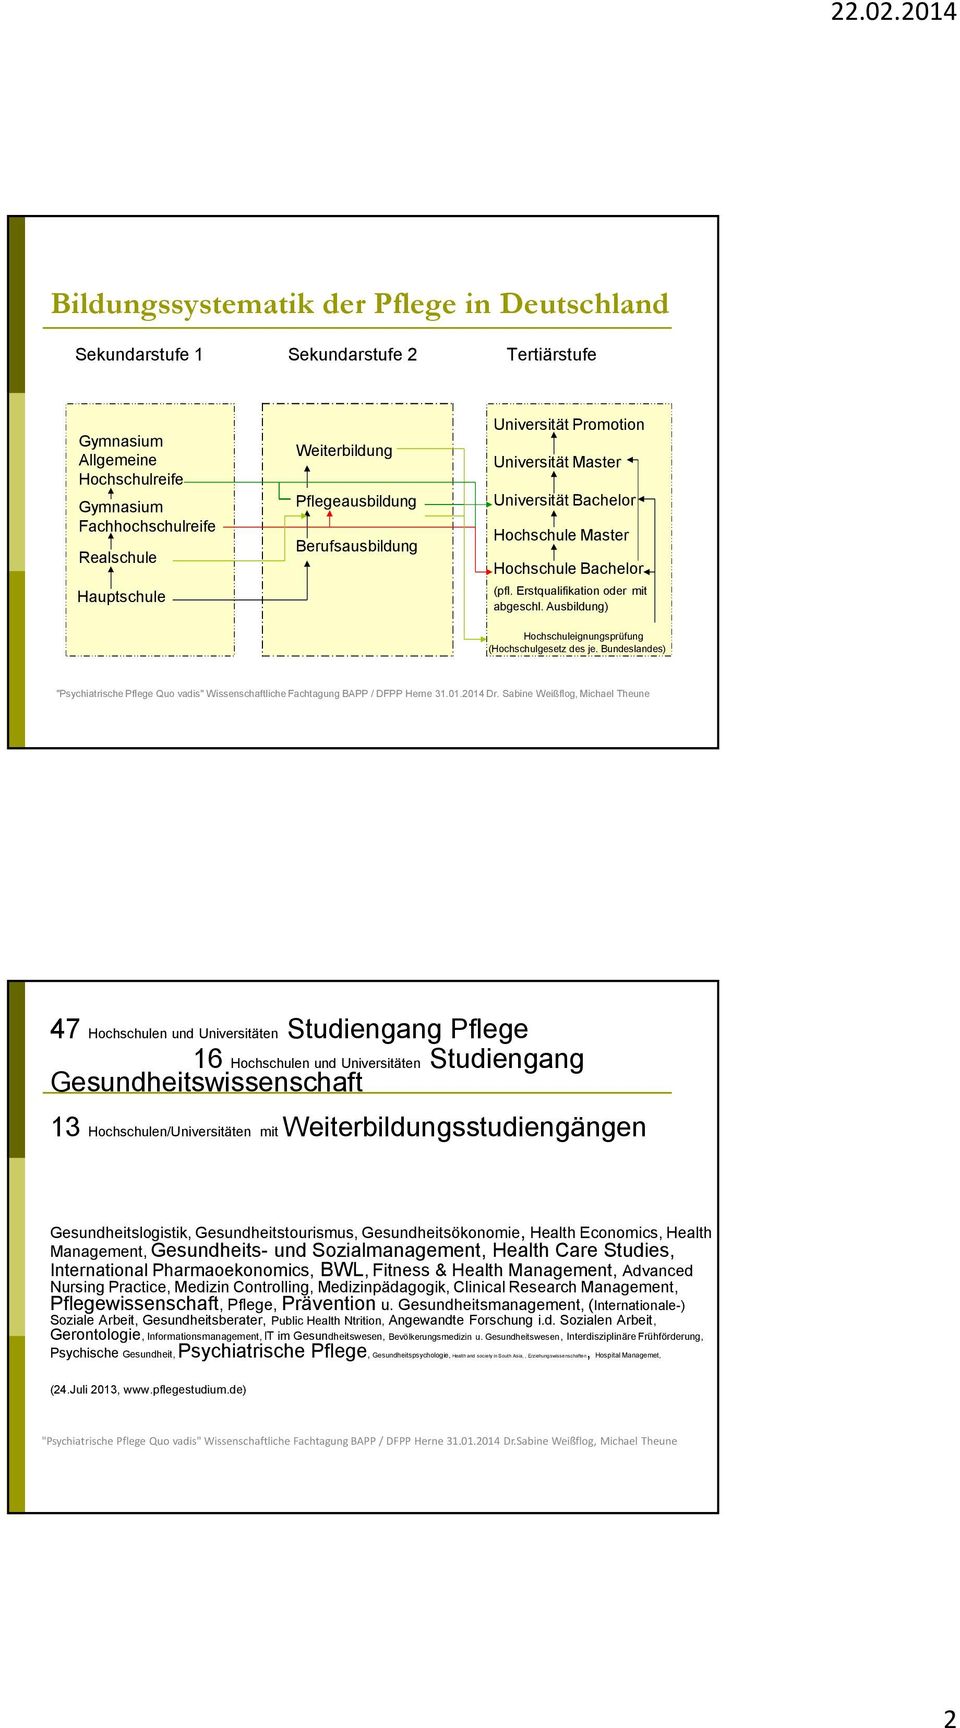 Ausbildung) Hochschuleignungsprüfung (Hochschulgesetz des je. Bundeslandes) "PsychiatrischePflege Quo vadis" WissenschaftlicheFachtagung BAPP / DFPP Herne 31.01.2014Dr.